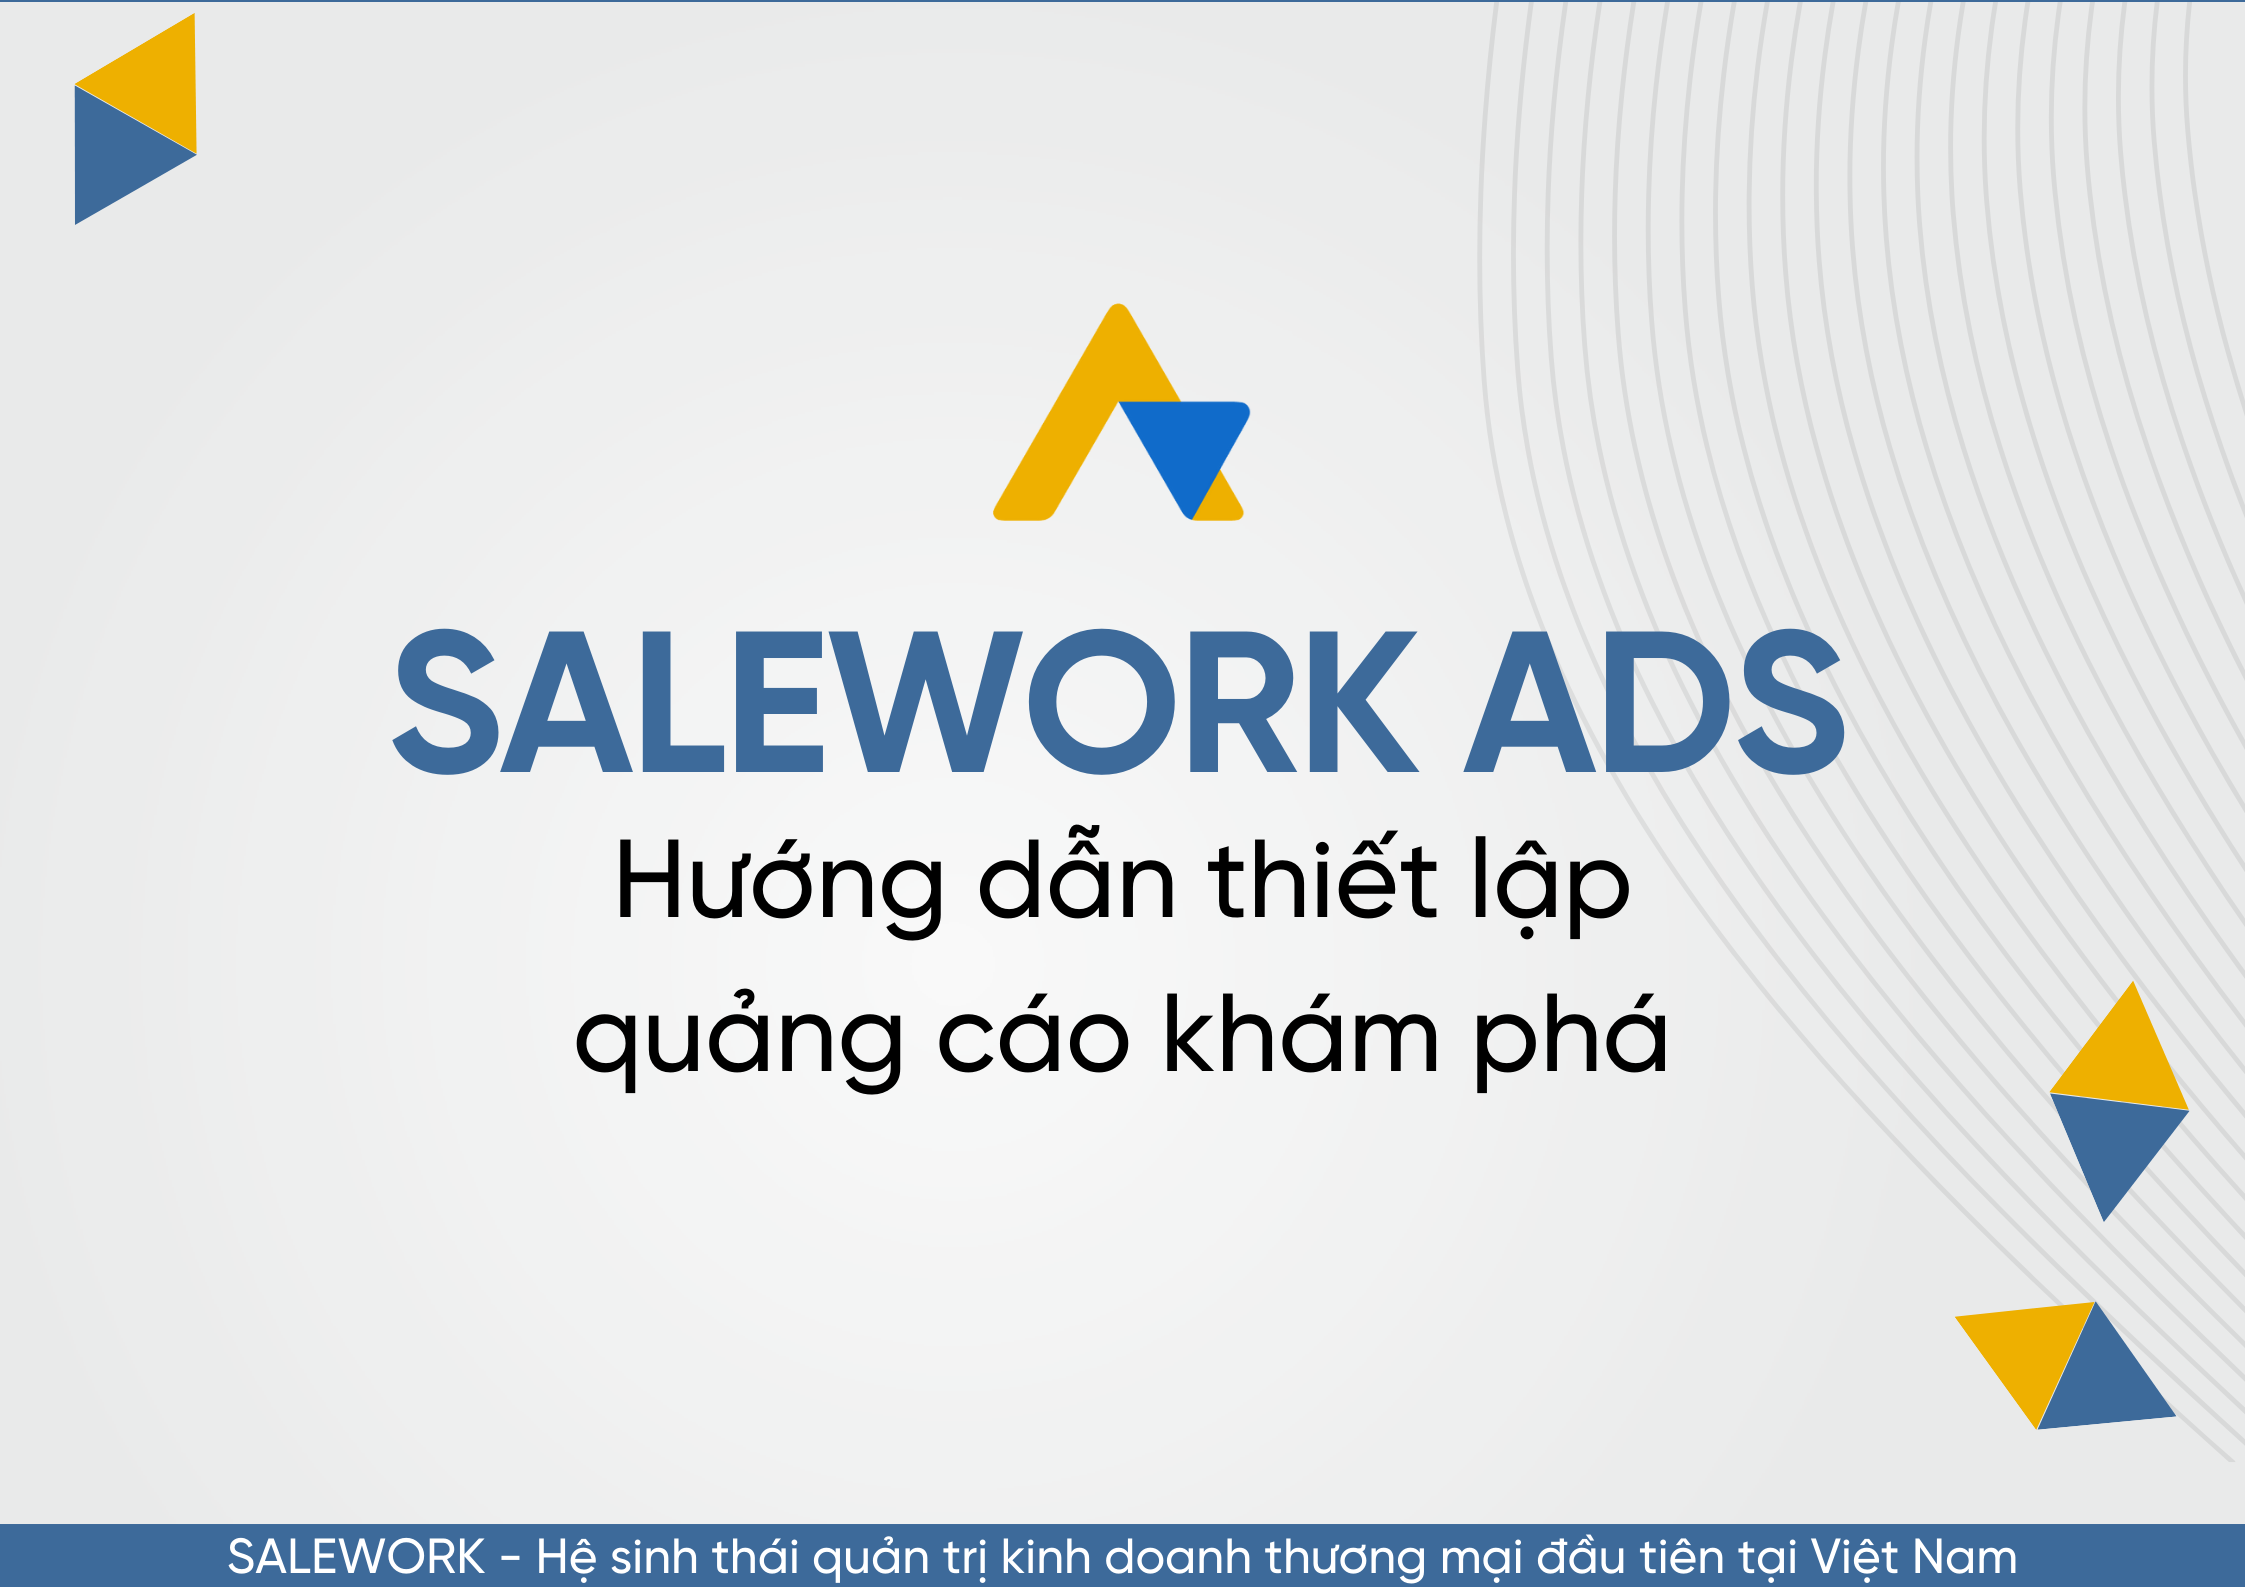 Hướng dẫn thiết lập quảng cáo khám phá tại Salework Ads - 50